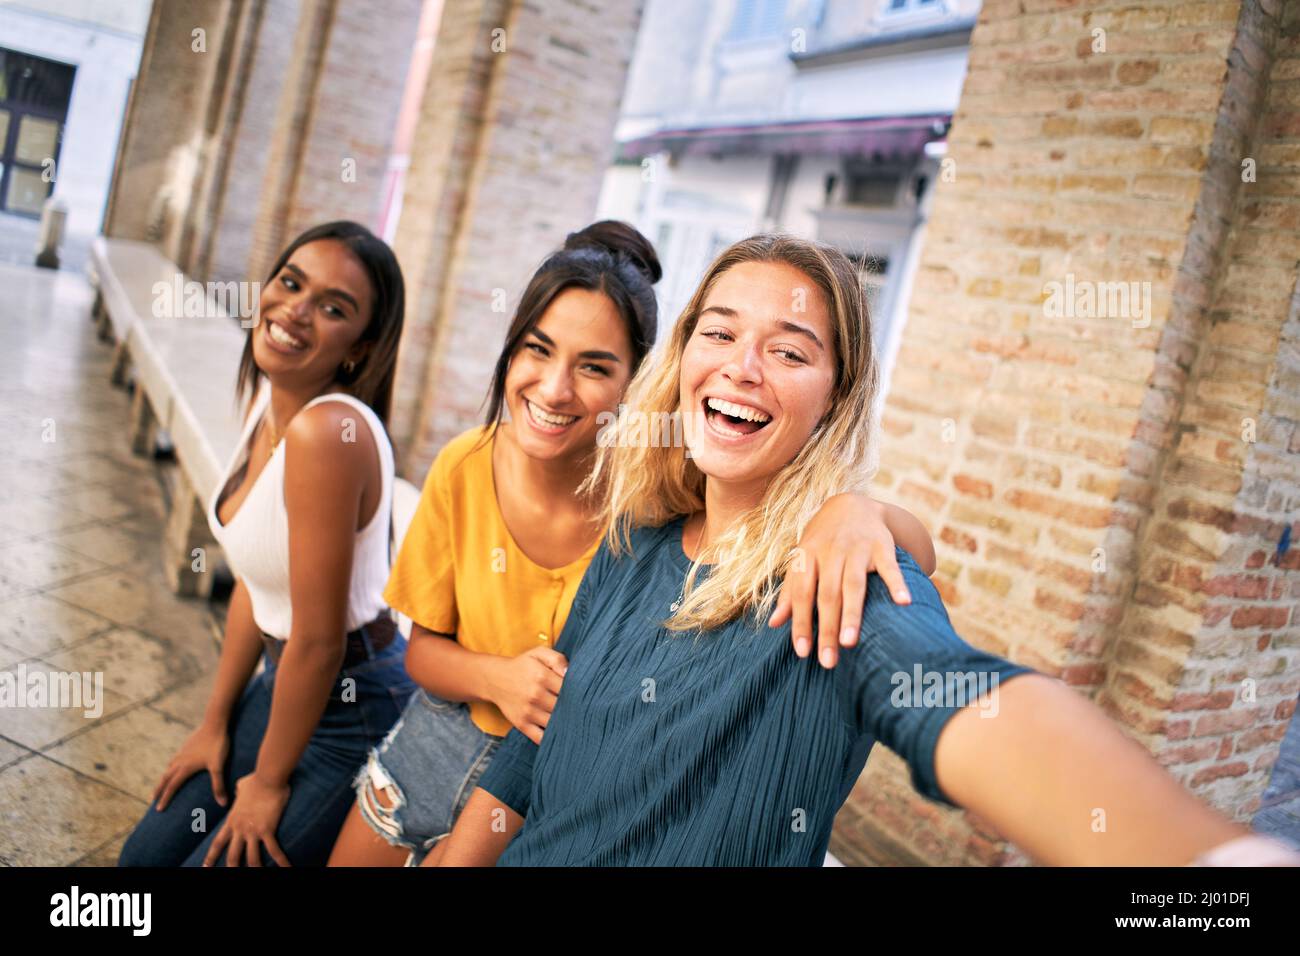 Glückliche Frau nimmt ein lustiges Selfie und lacht gut. Stockfoto